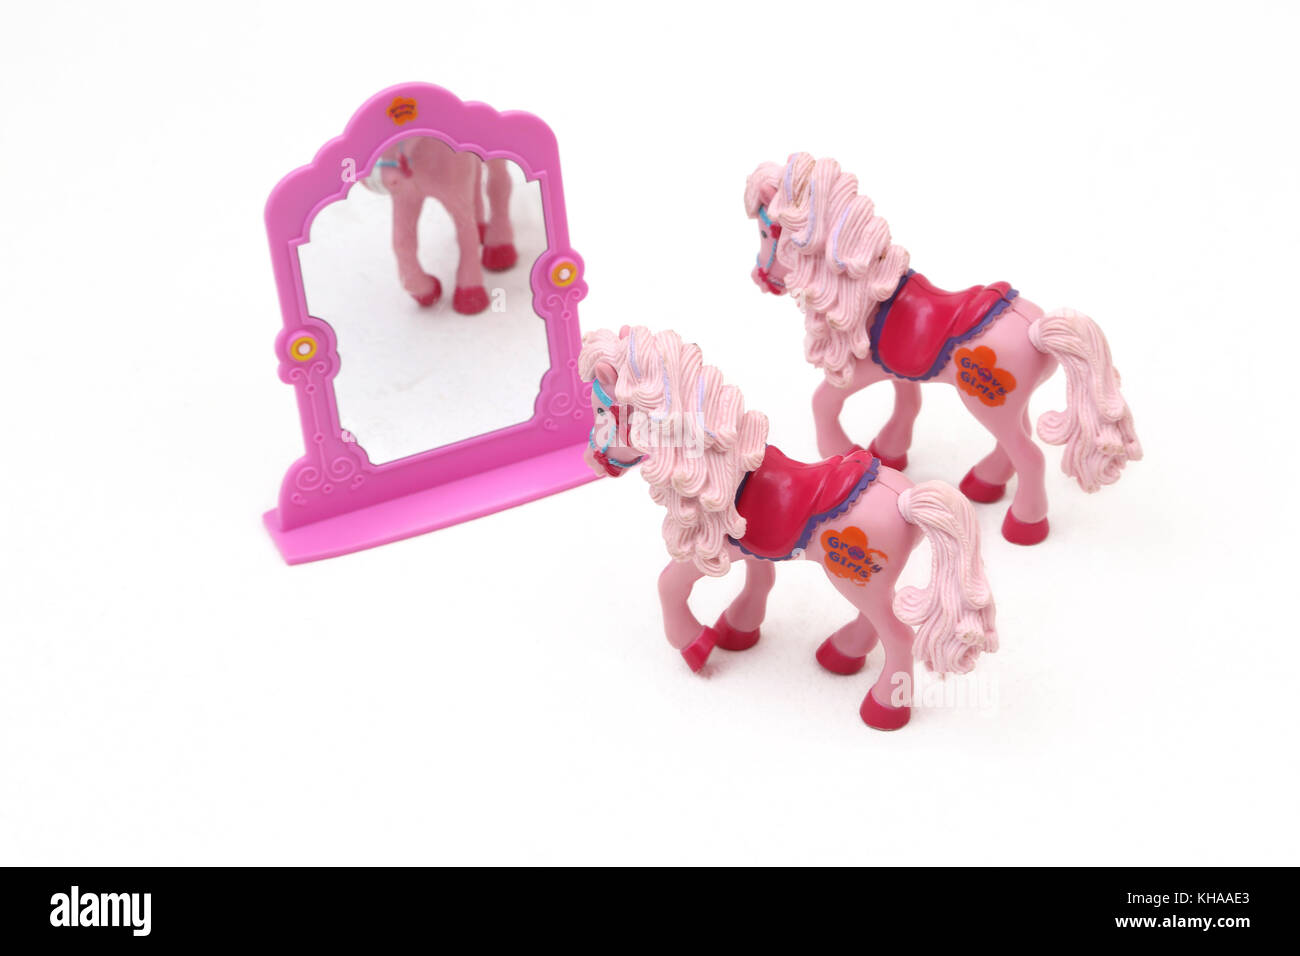 Spielzeug grooviger Mädchen Pferde und Spiegel Stockfoto